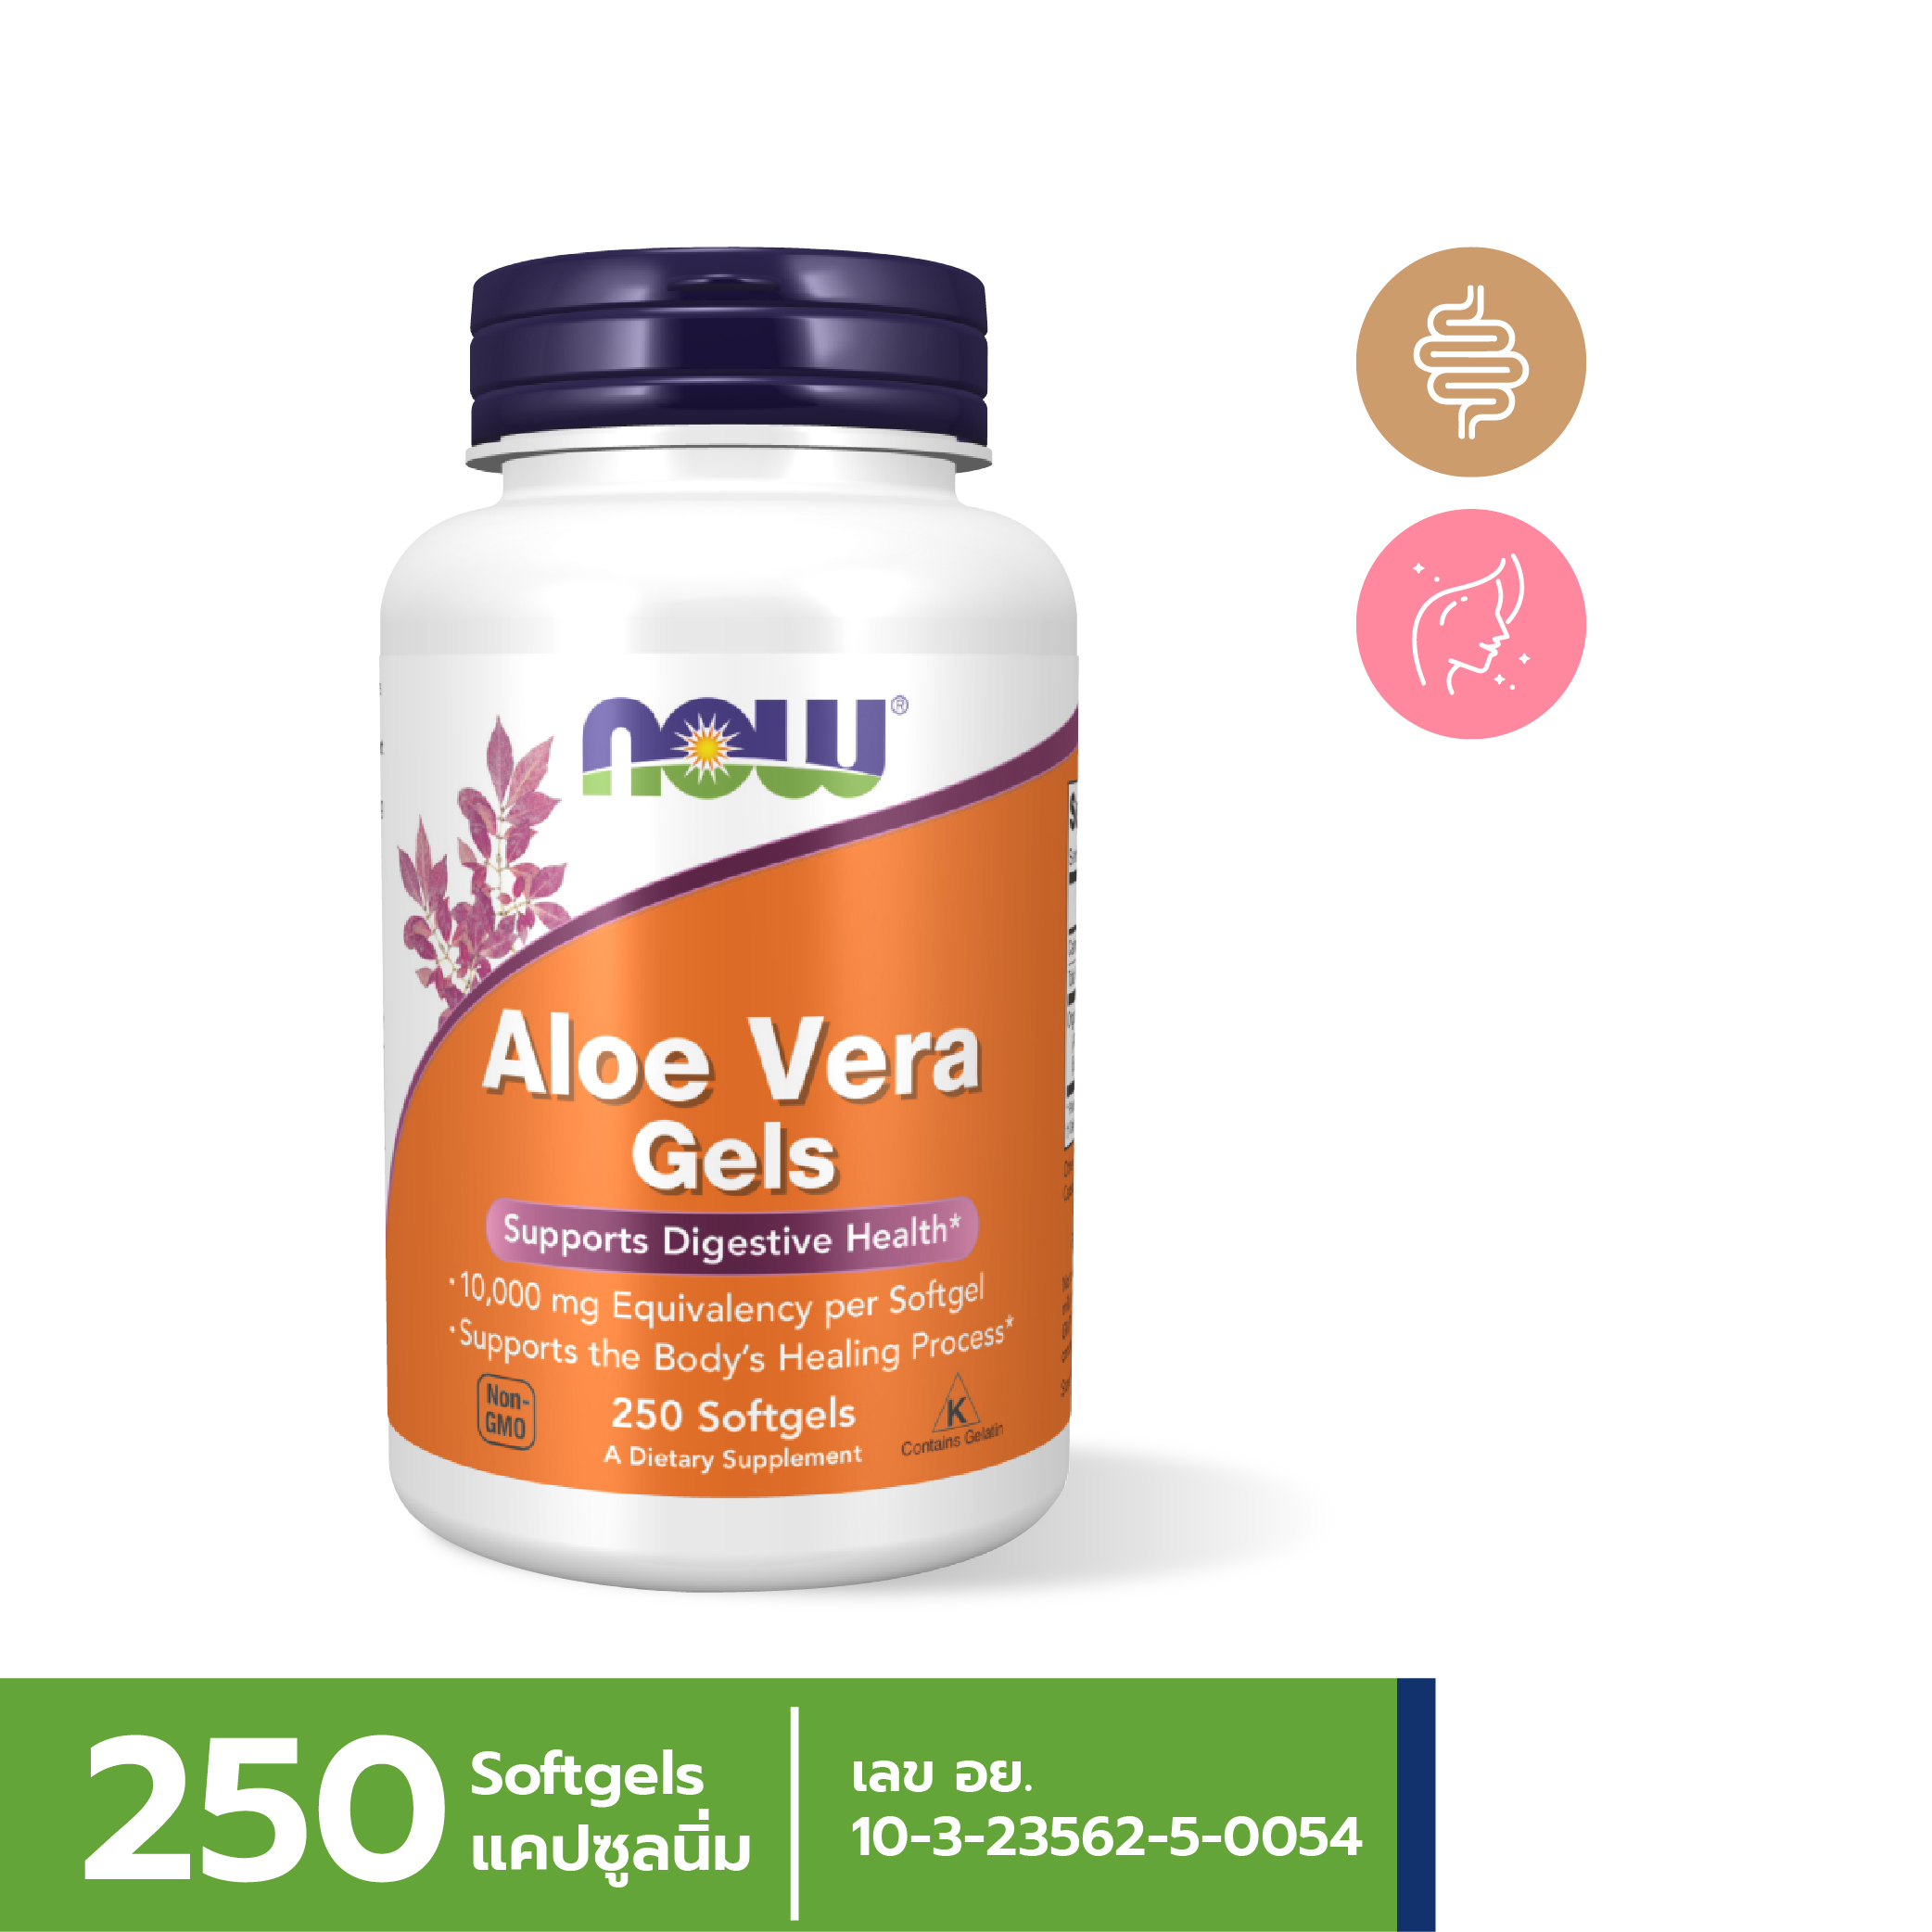 [ลูกค้าใหม่กรอก FORYOU89 ลดเลย 89.-] NOW Aloe Vera 10,000 mg (250 Softgels)